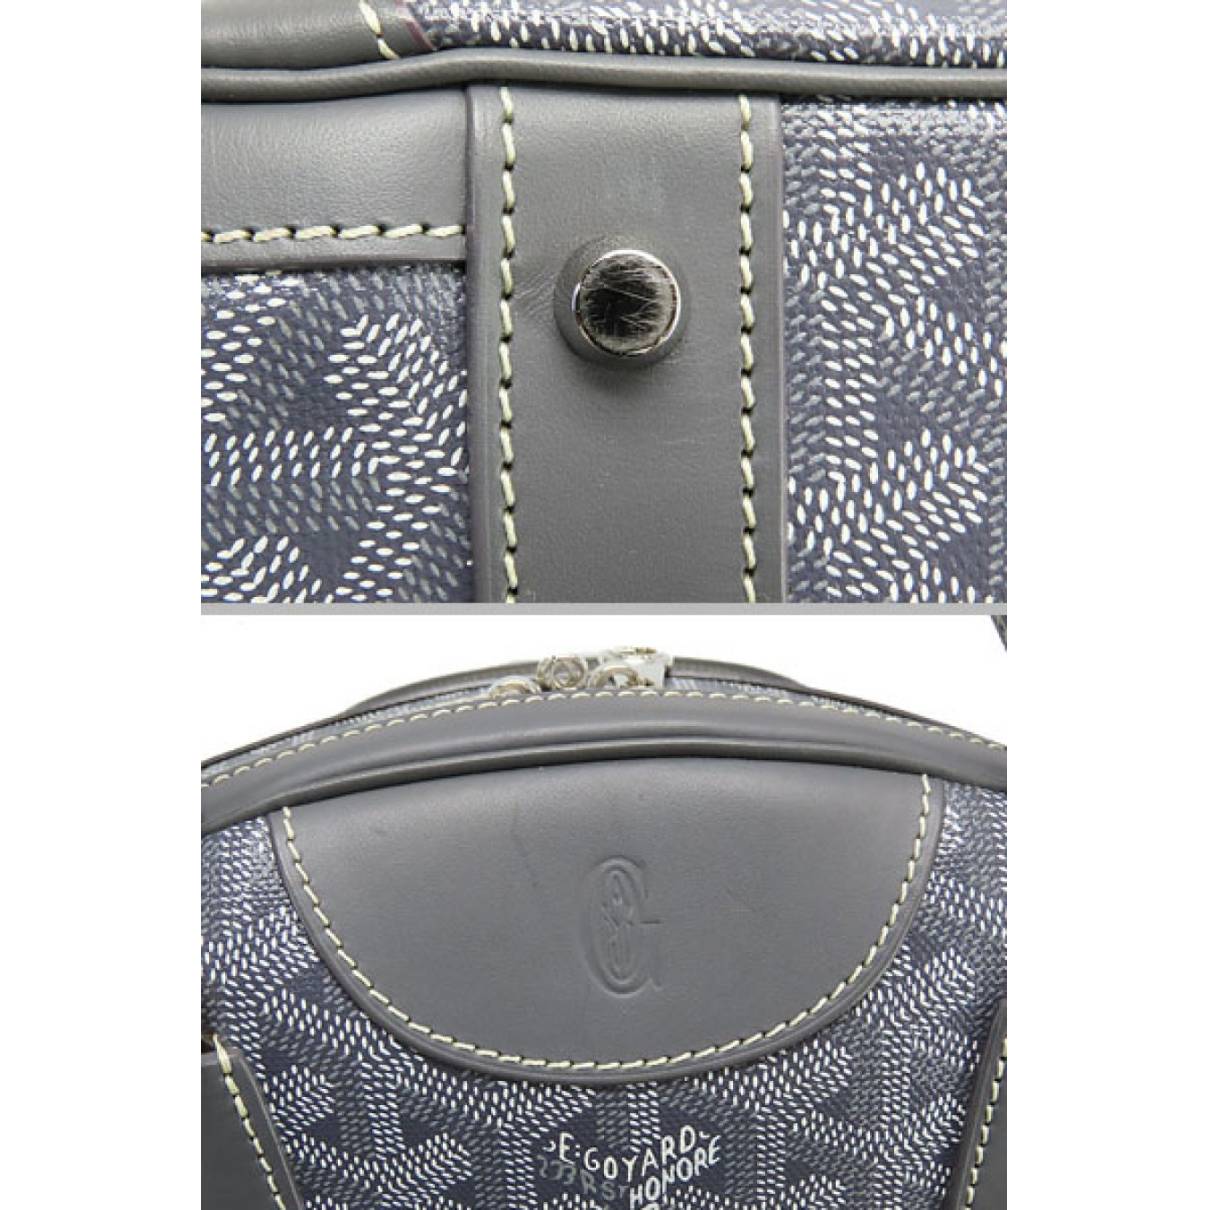 Leather bowling bag Goyard Grey in Leather - 29554536